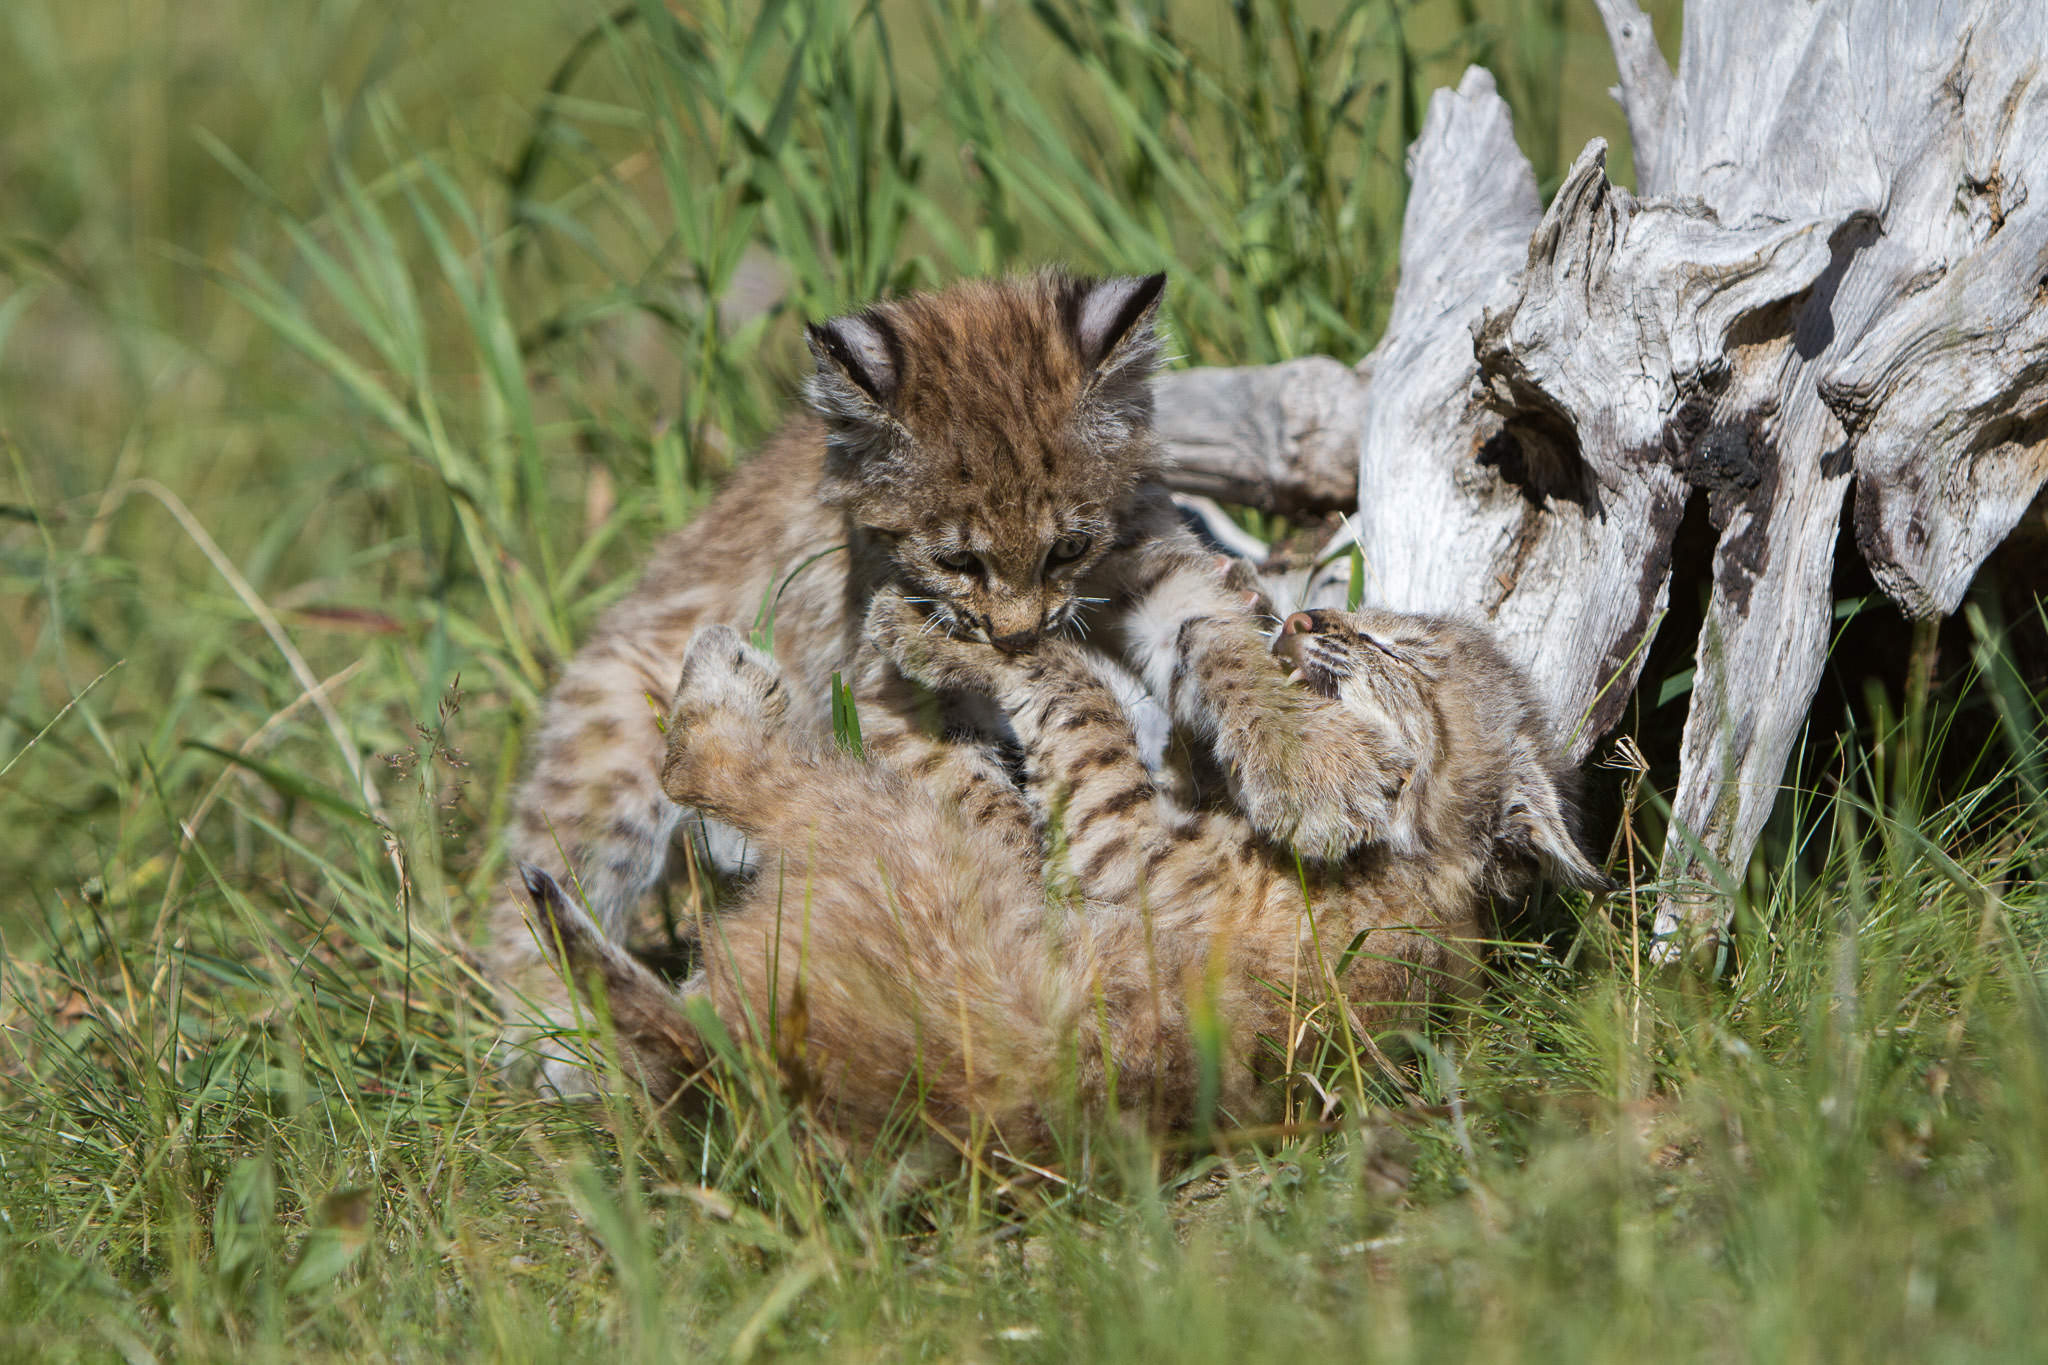  Bobcat kittens  Western Montana  #20130708_0373-2 